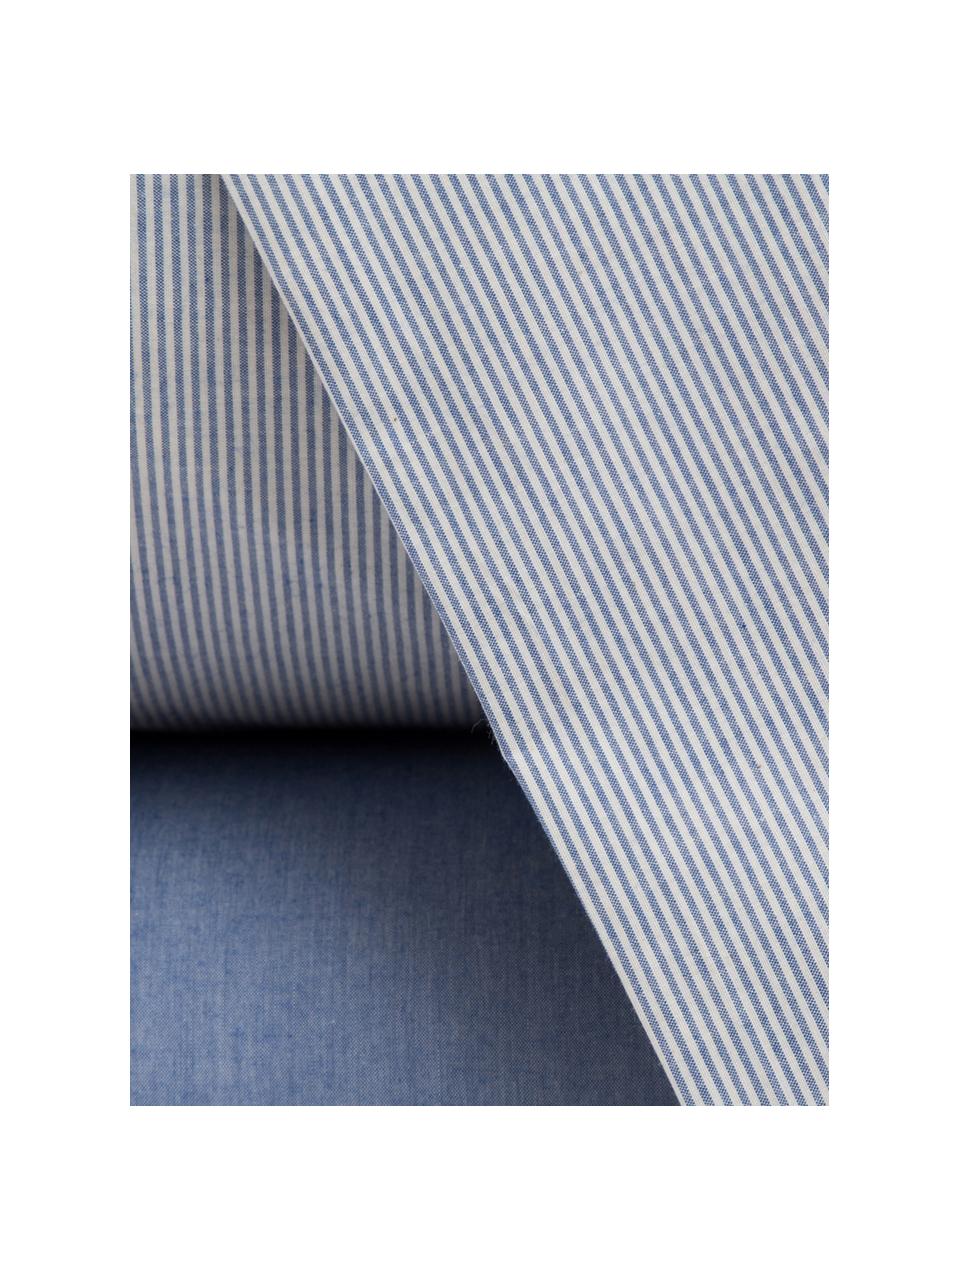 Completo copripiumino in percalle Stripes, Tessuto: percalle, Azzurro, blu marino, 250 x 260 cm + 2 federe + 1 lenzuolo con angoli